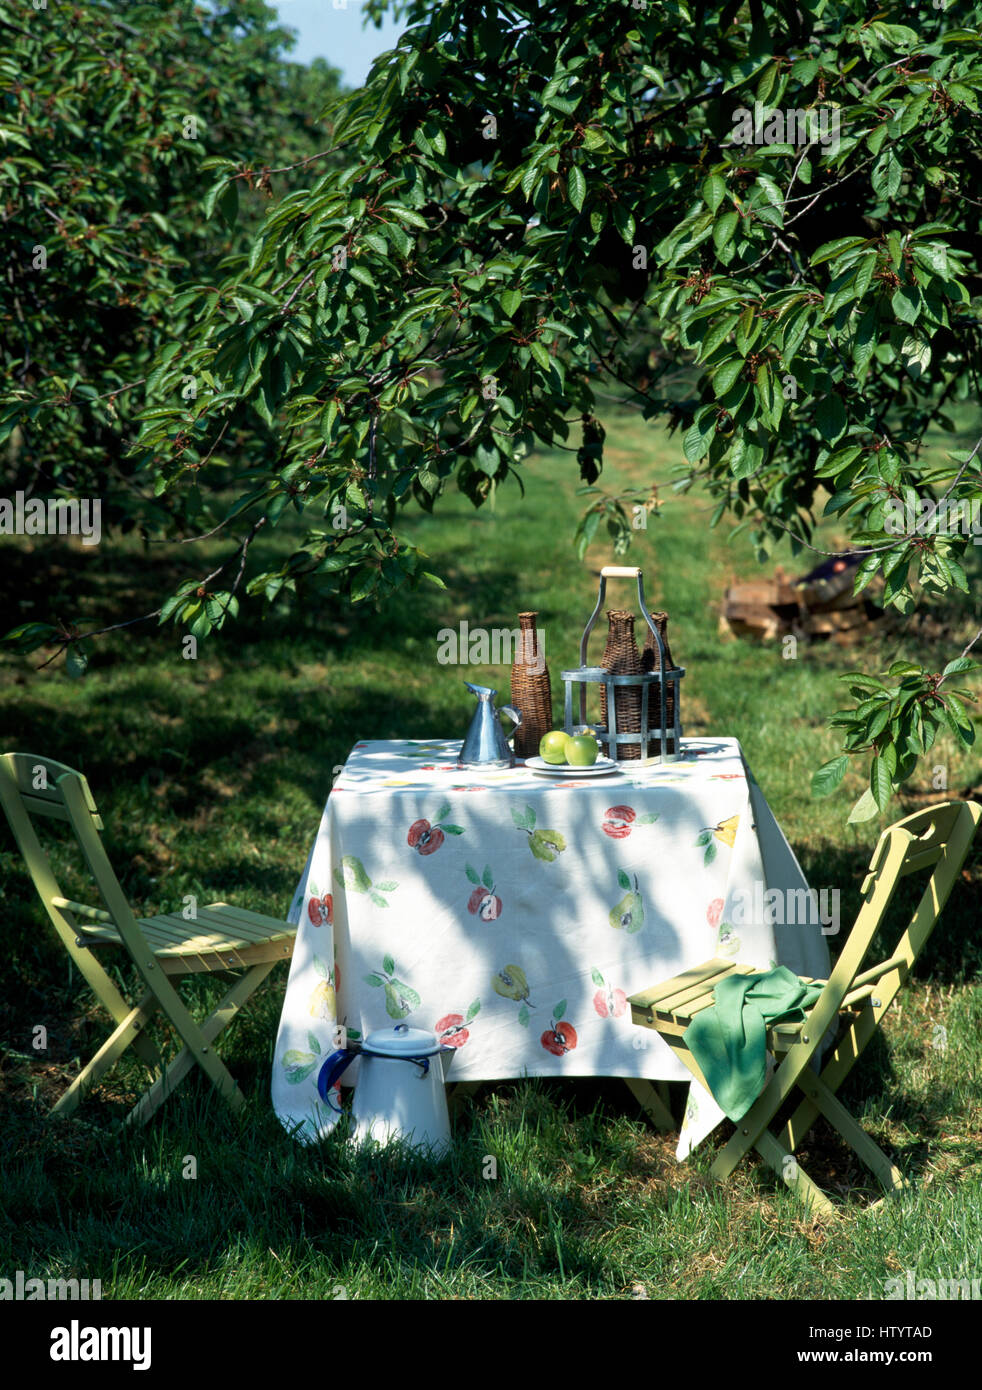 Blasse Grün lackierten Stühle am Tisch mit floralen Tuch und Wicker Flaschen auf Rasen unter einem schattigen Baum in einen Garten im Sommer Stockfoto